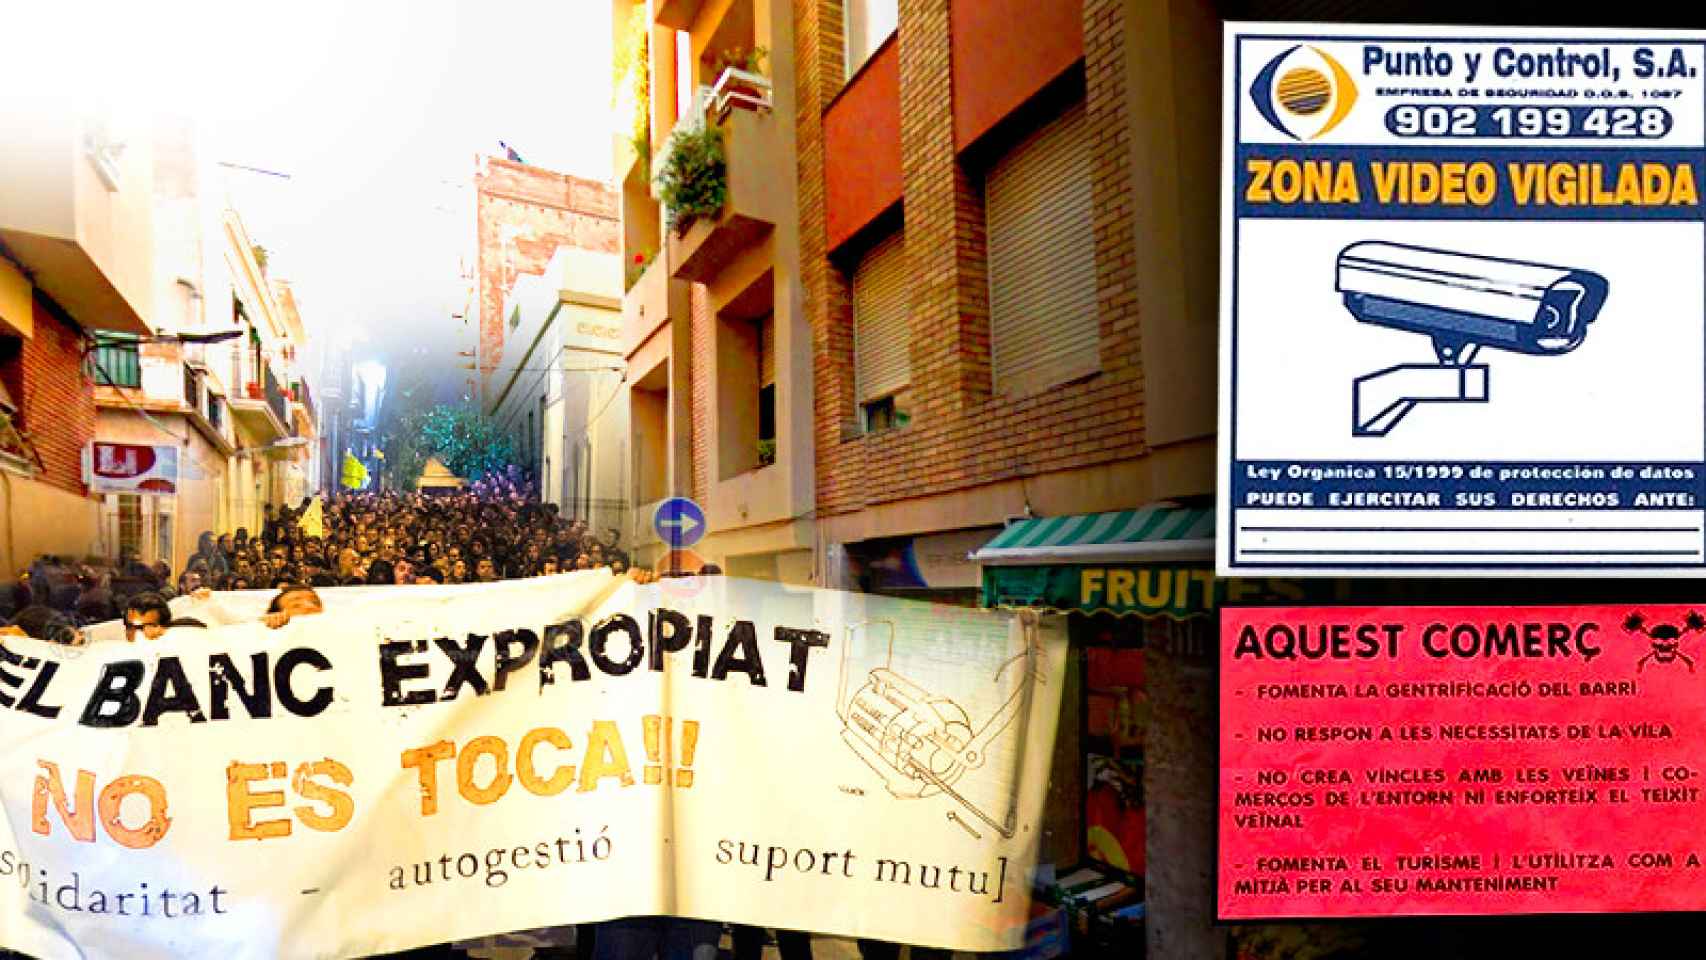 Los 'okupas' del Banco Expropiado de Barcelona por una calle de Gràcia. A la derecha, el panfleto marca la fachada de un negocio turístico vecino.